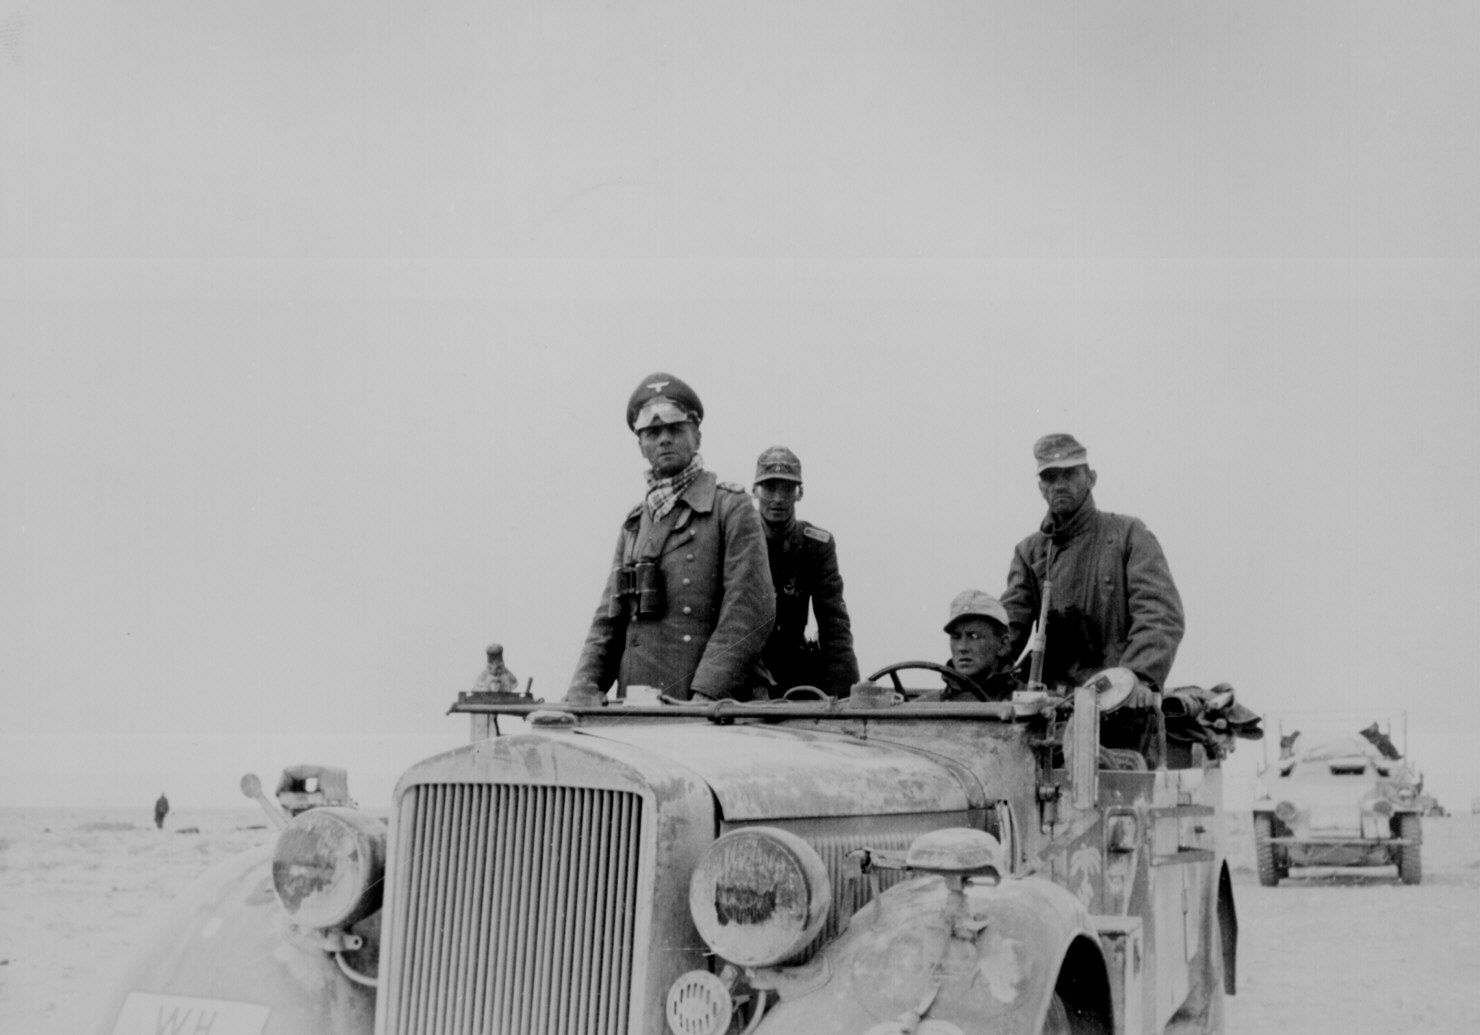 Erwin Rommel (1891-1944)